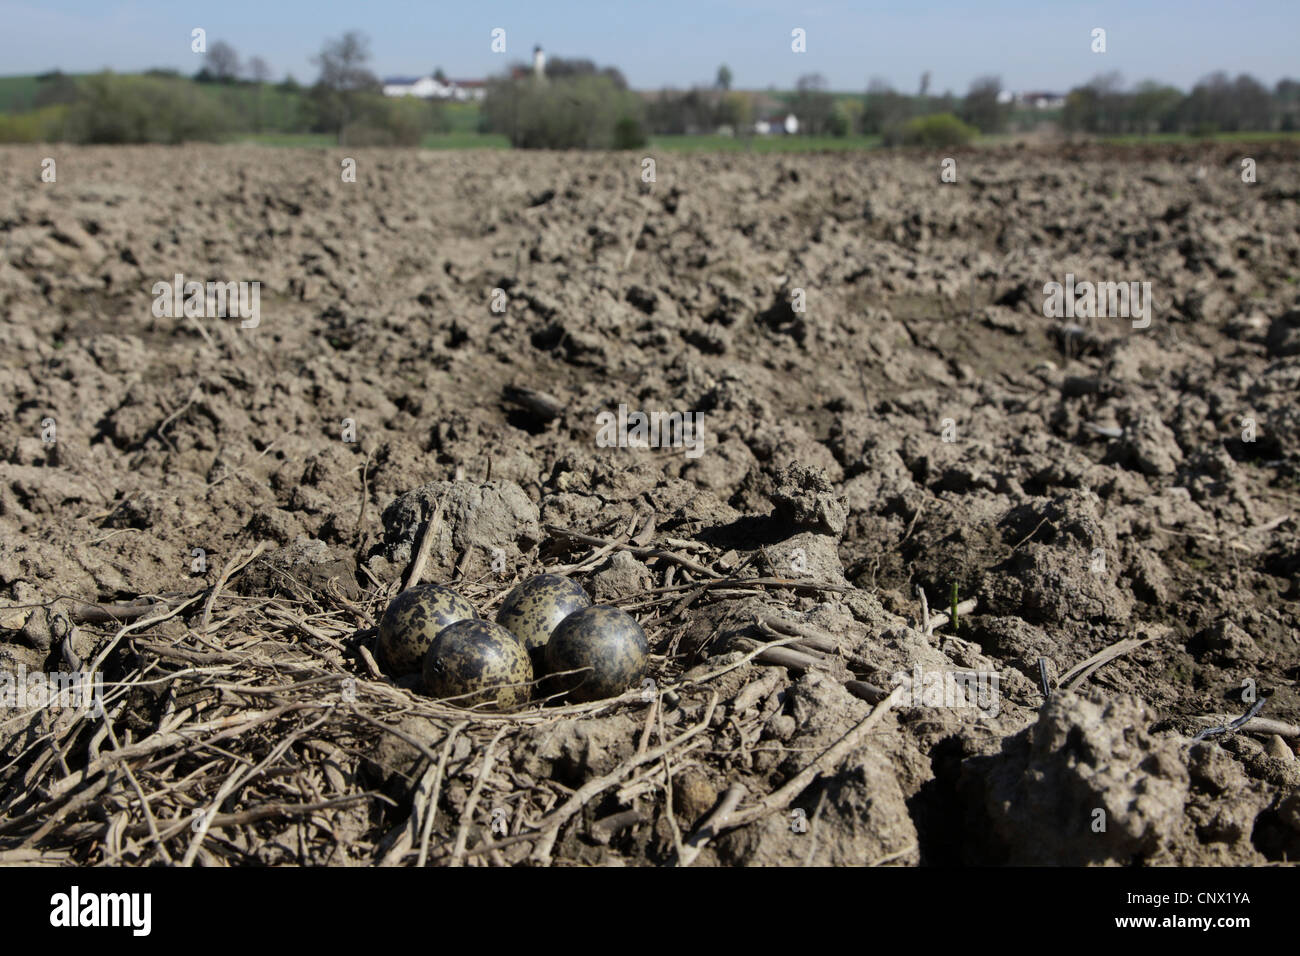 Le nord de sociable (Vanellus vanellus), nichent dans un champ de maïs avant la culture, l'Allemagne, la Bavière Banque D'Images